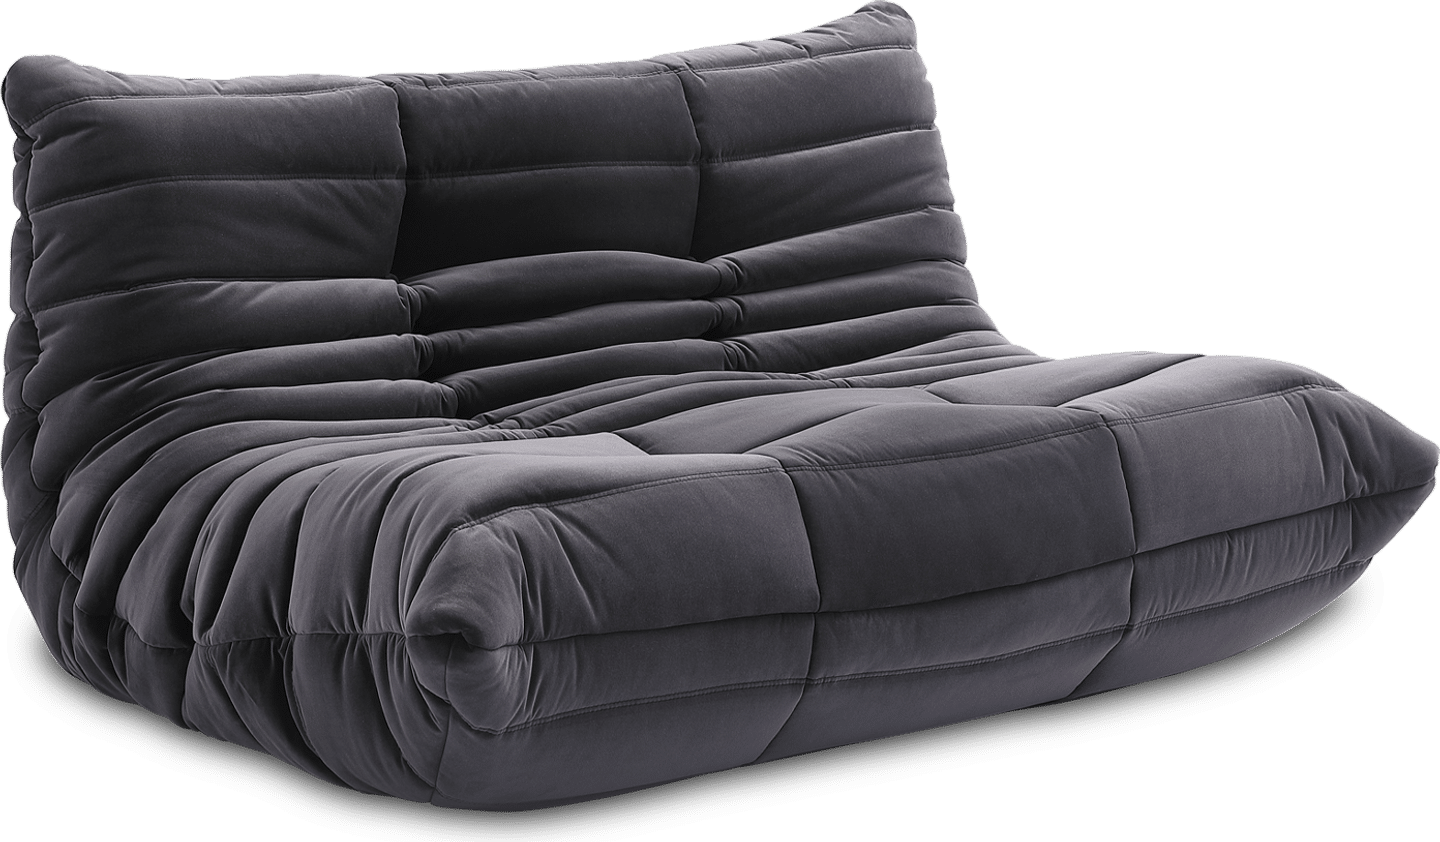 Canapé cuir : découvrez confort et qualité - Le blog de Vente